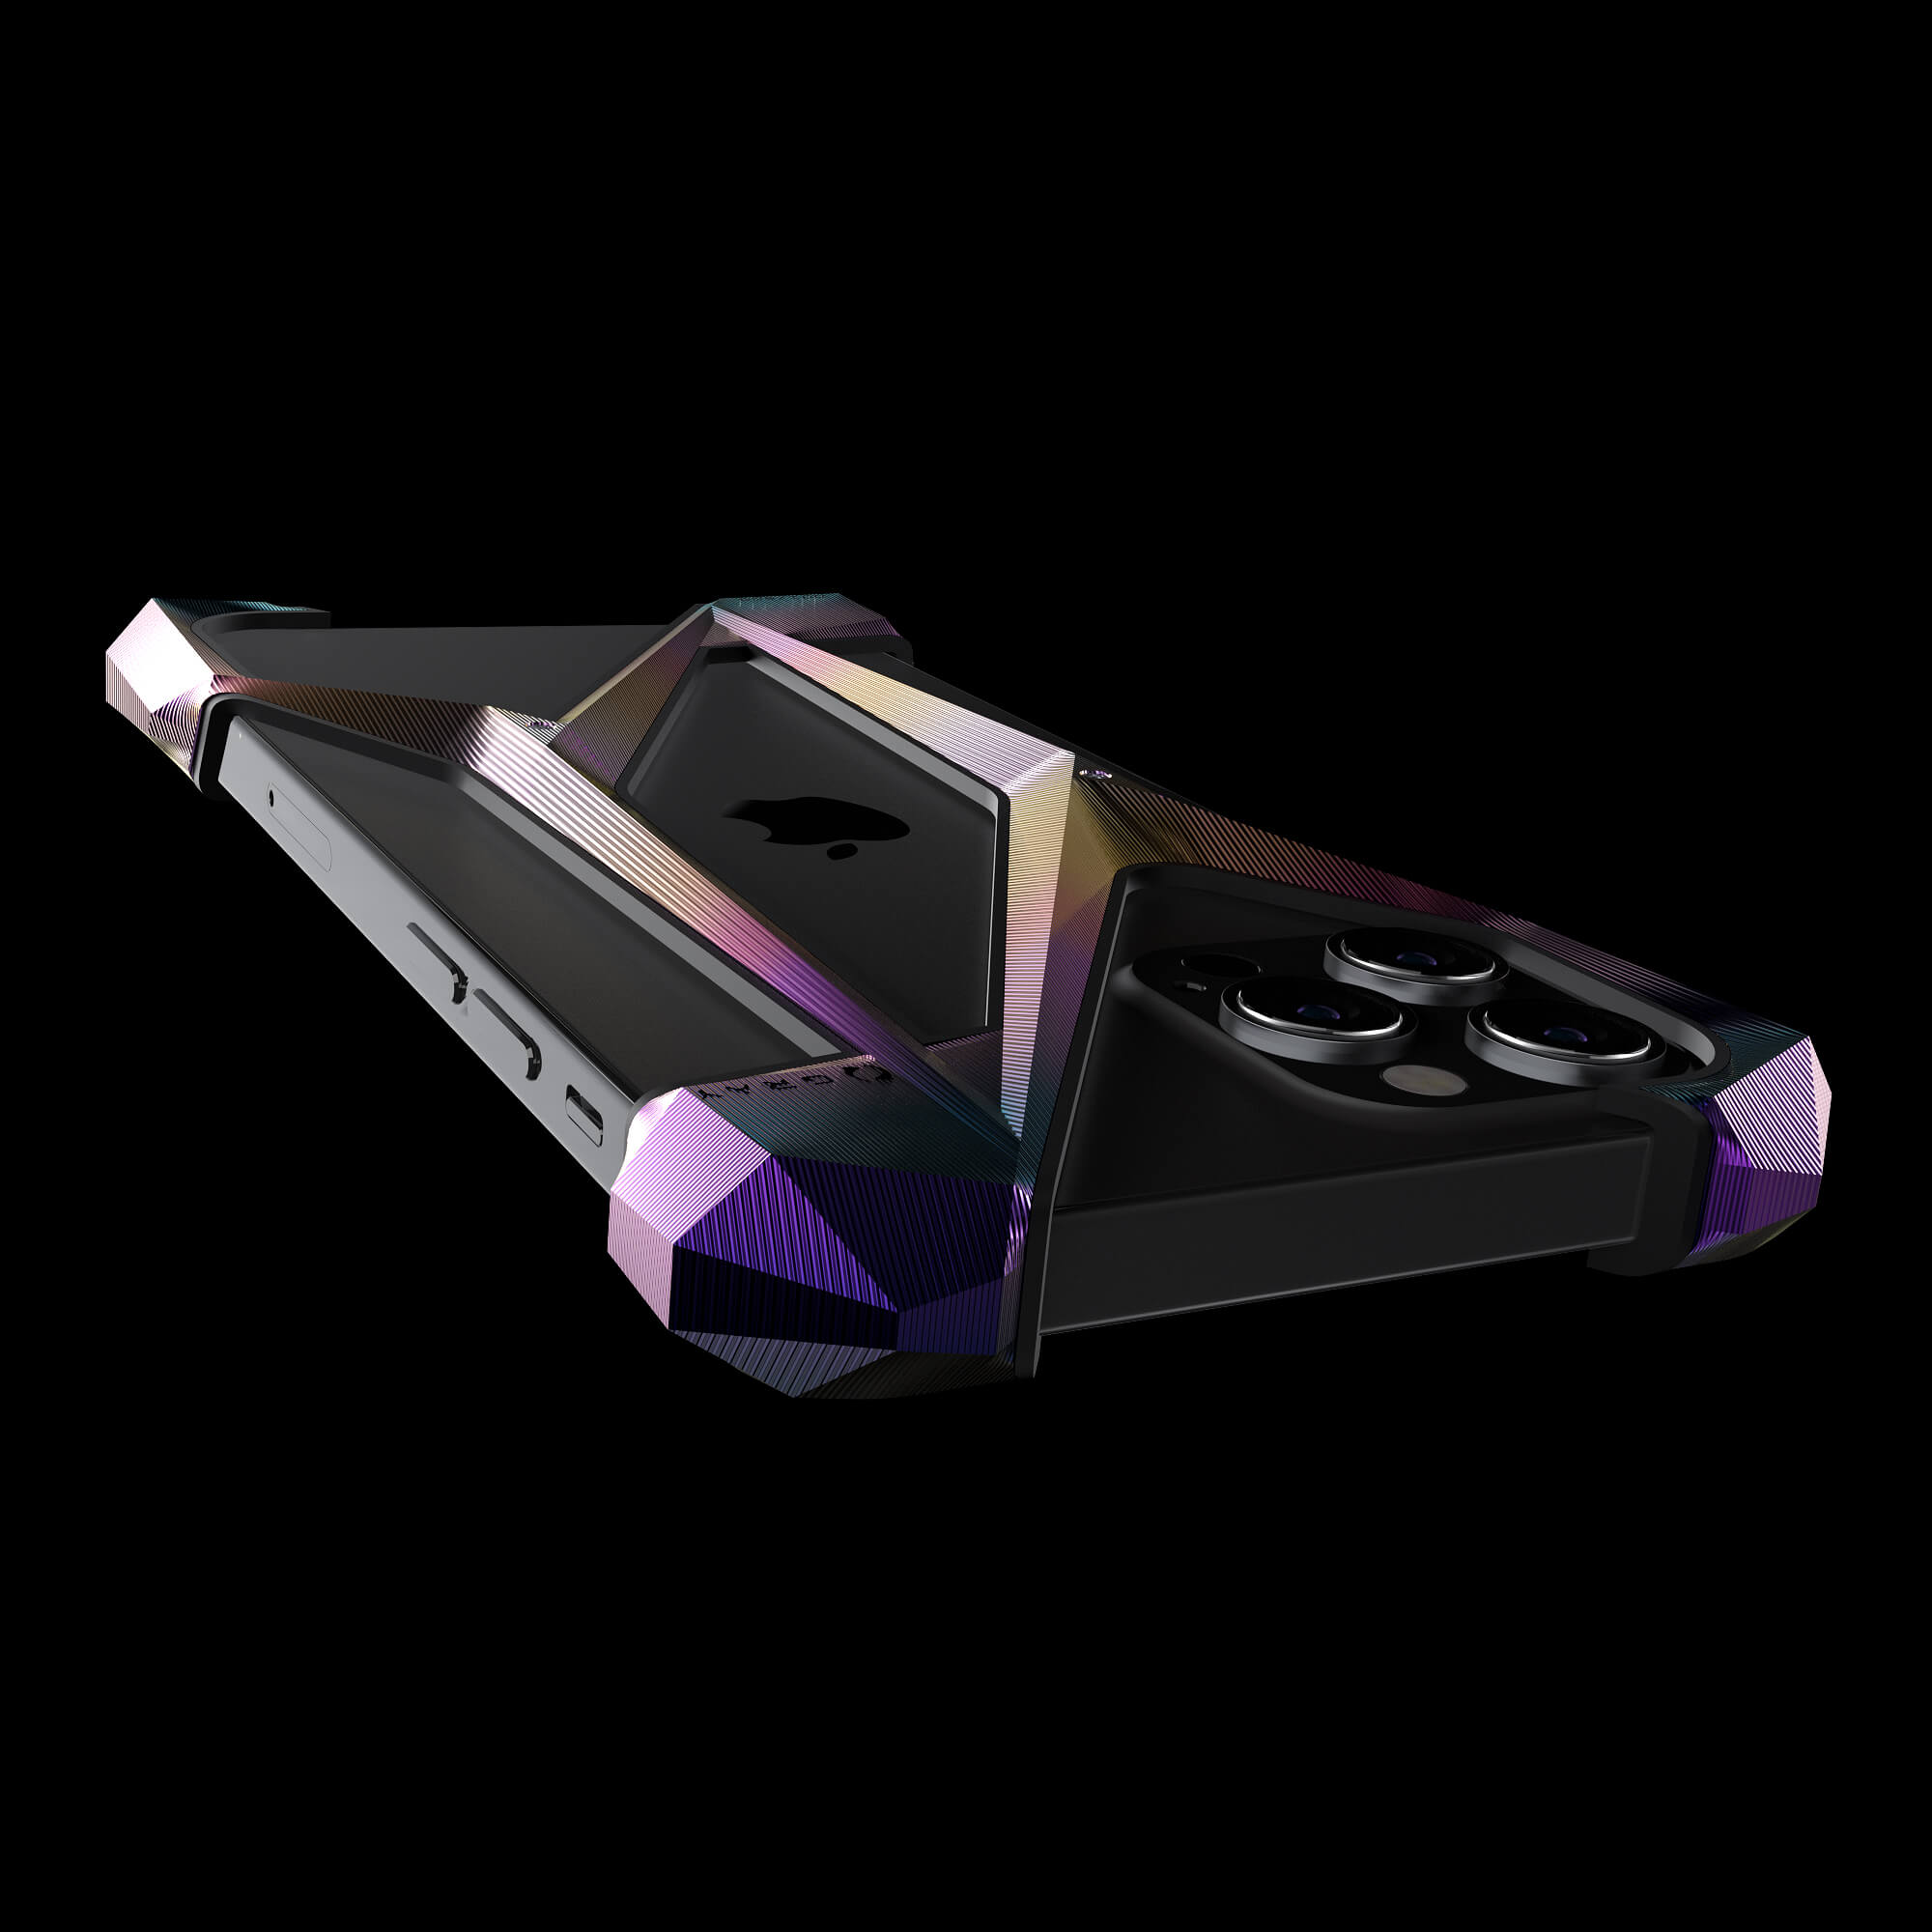 alter ego aurora titanium metal designer iPhone 12 pro case